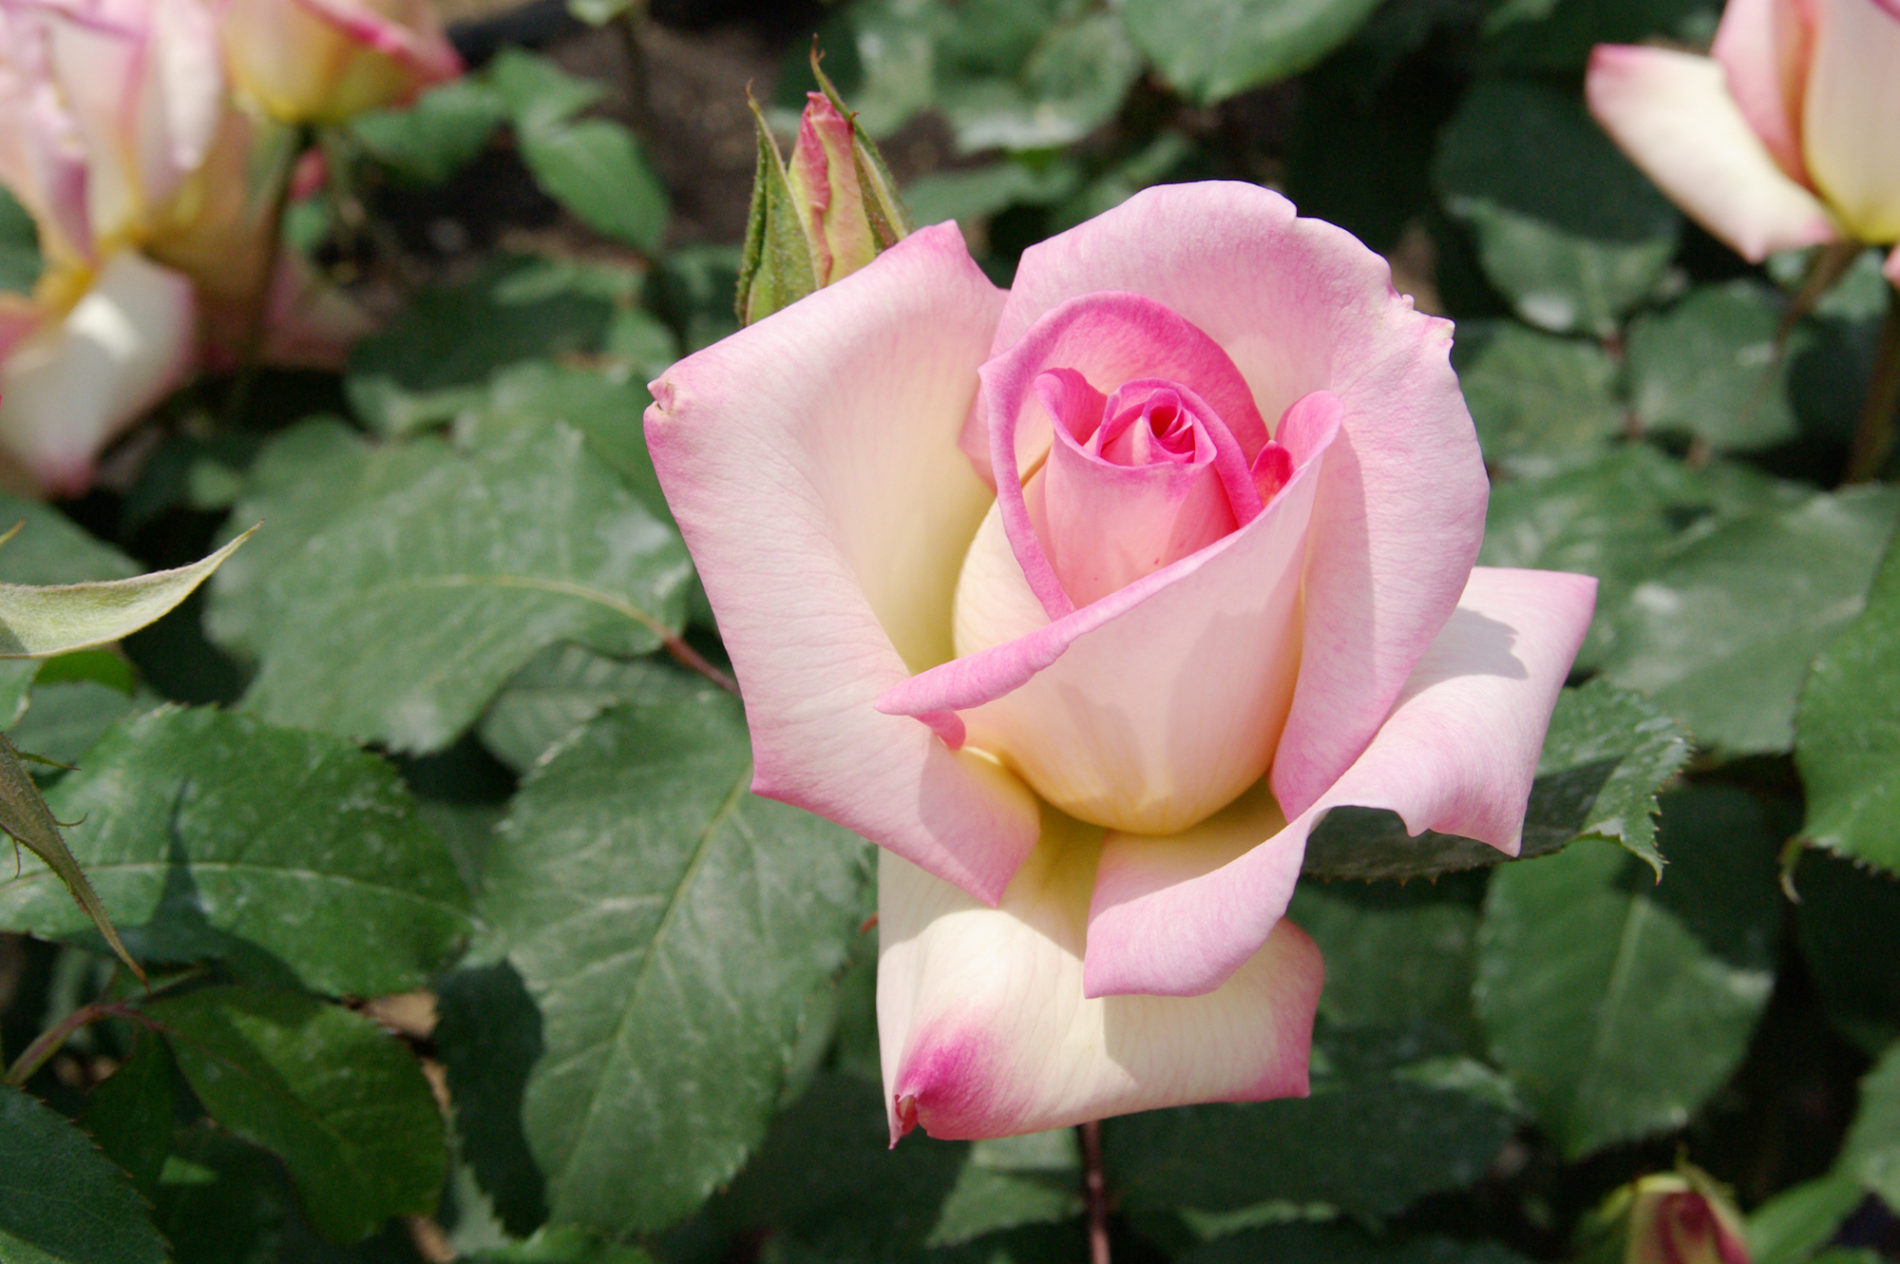 ピンクの薔薇の写真